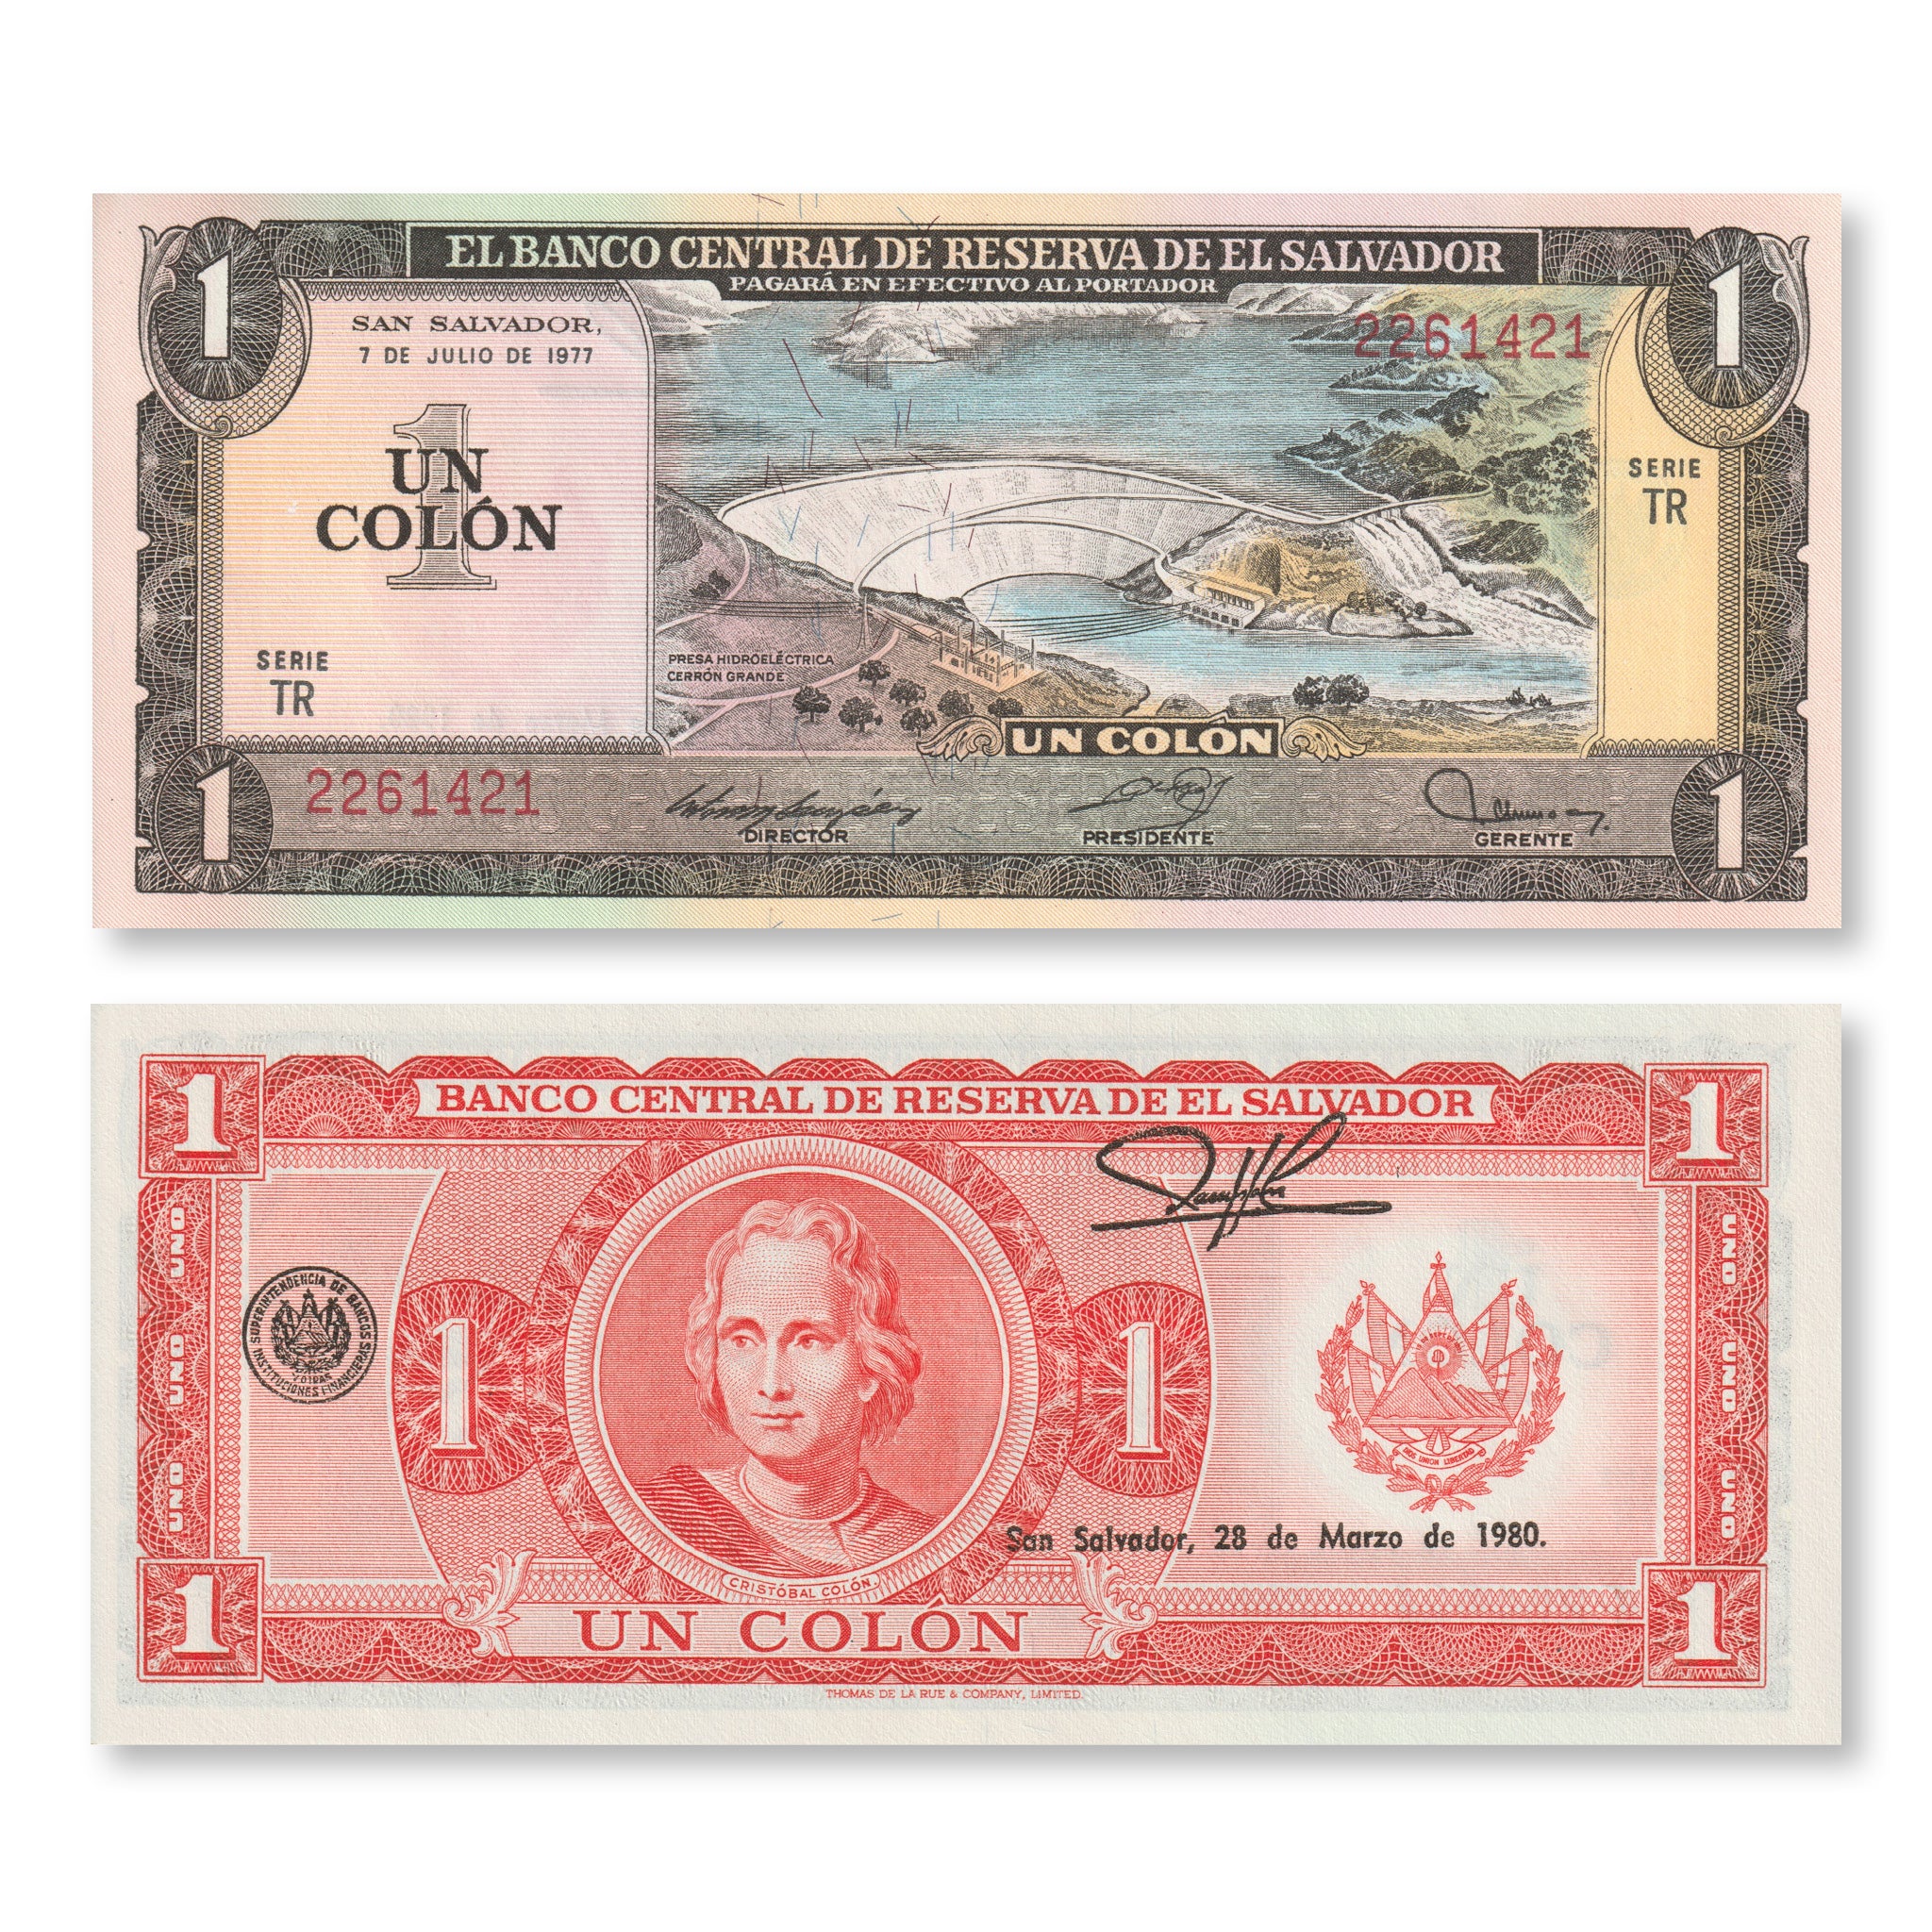 El Salvador 1 Colon, 1977, B1052a, P125a, UNC - Robert's World Money - World Banknotes